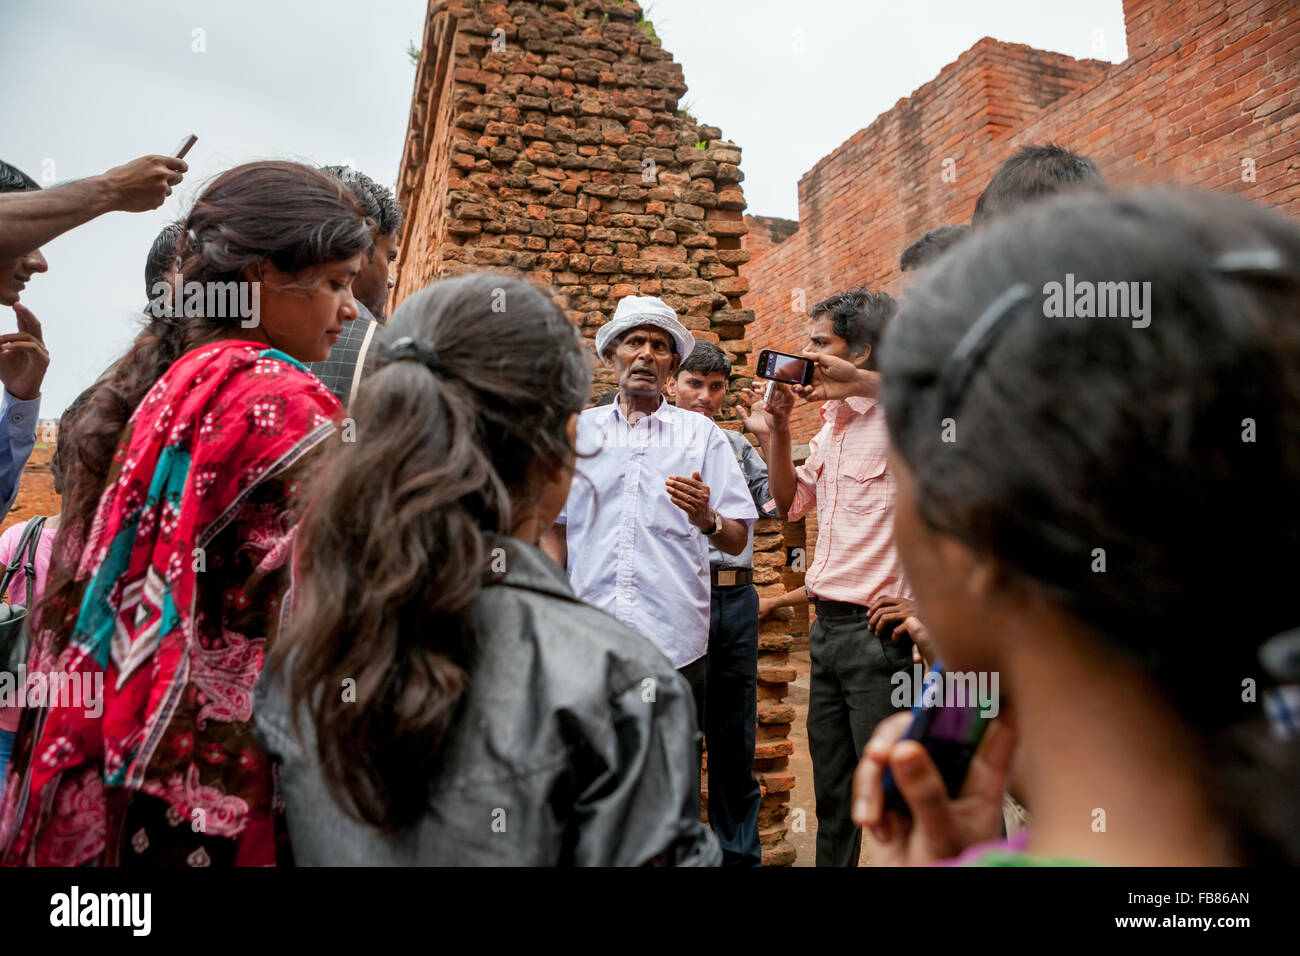 Universitätsstudenten erhalten Erläuterungen von einem Reiseleiter, während sie den alten buddhistischen Universitätskomplex von Nalanda in Nalanda, Bihar, Indien besuchen. Stockfoto